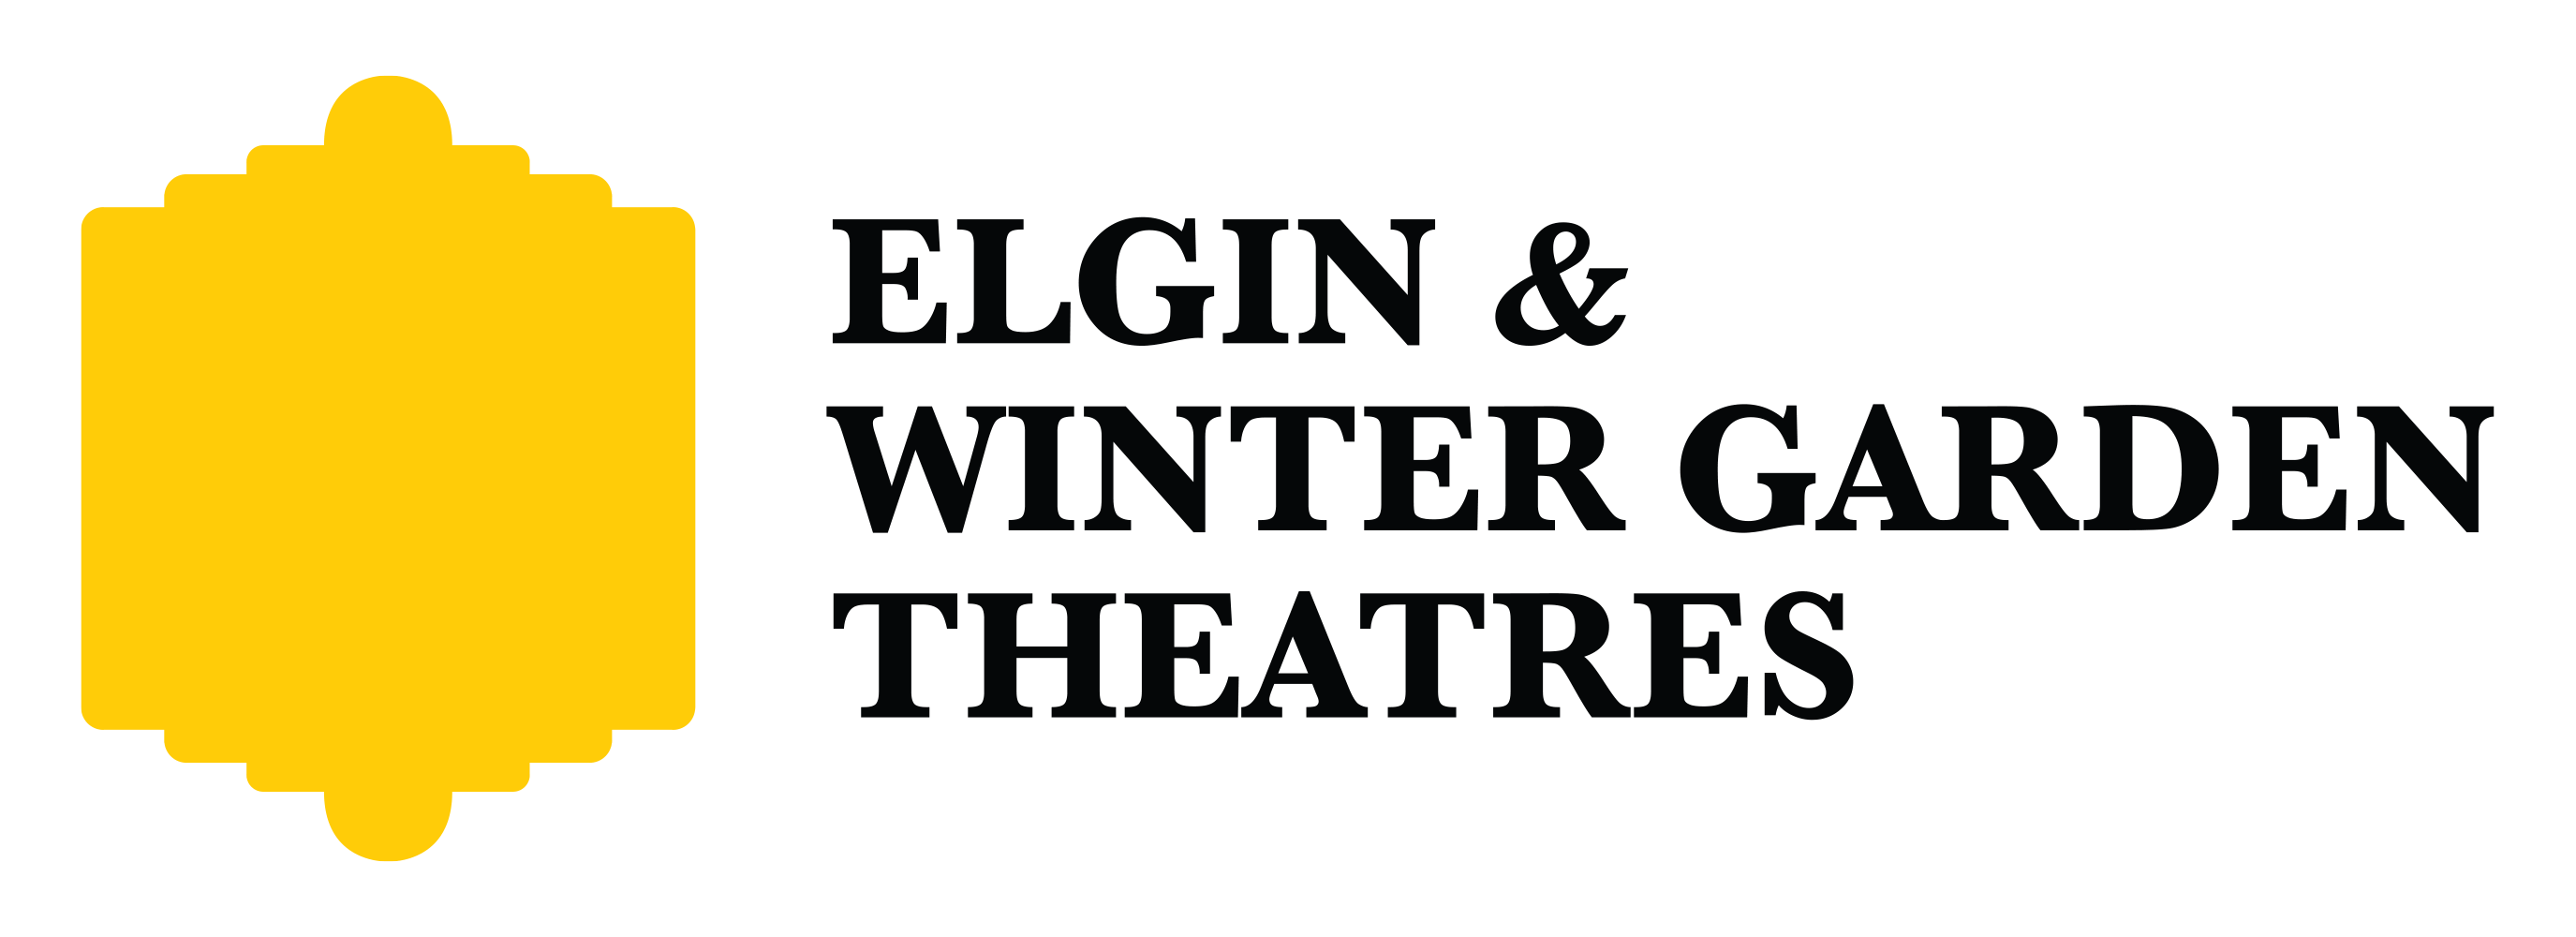 Elgin Winter Garden Theatre Homepage